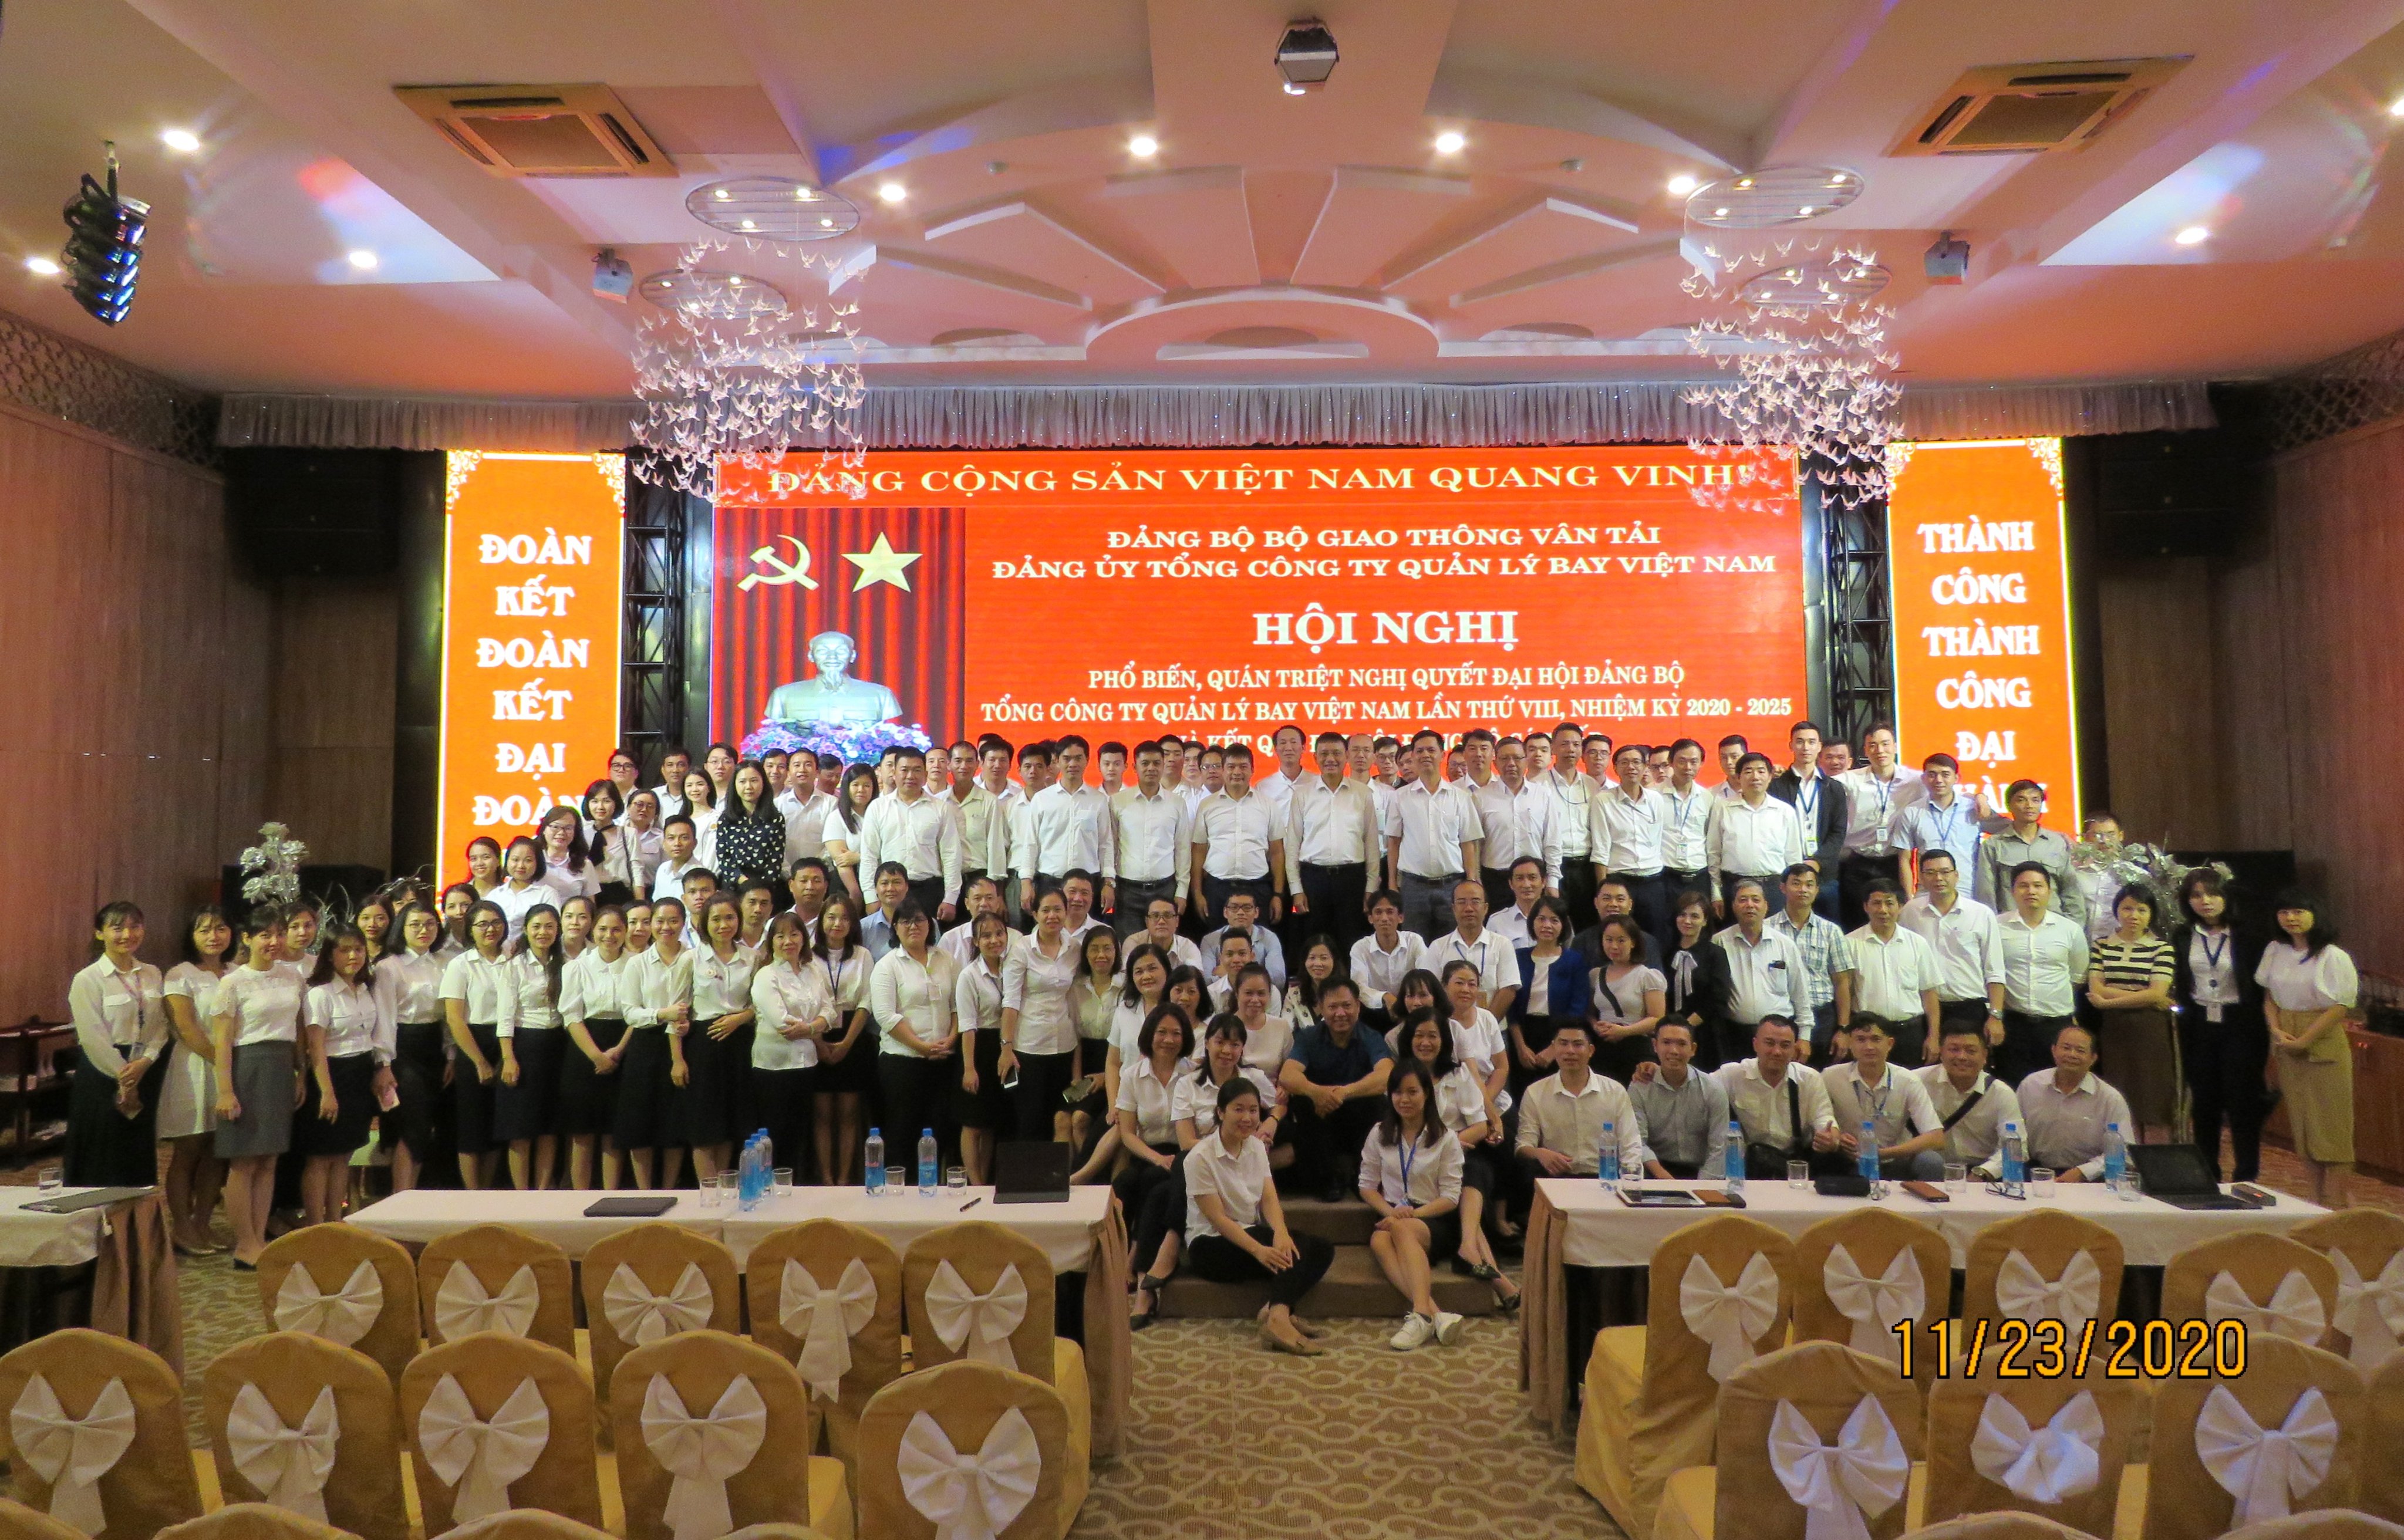 Hội nghị phổ biến, quán triệt Nghị quyết Đại hội Đảng bộ Tổng công ty Quản lý bay Việt Nam lần thứ VIII, nhiệm kỳ 2020-2025 và kết quả Đại hội Đảng bộ các cấp tại Công ty Quản lý bay miền Trung